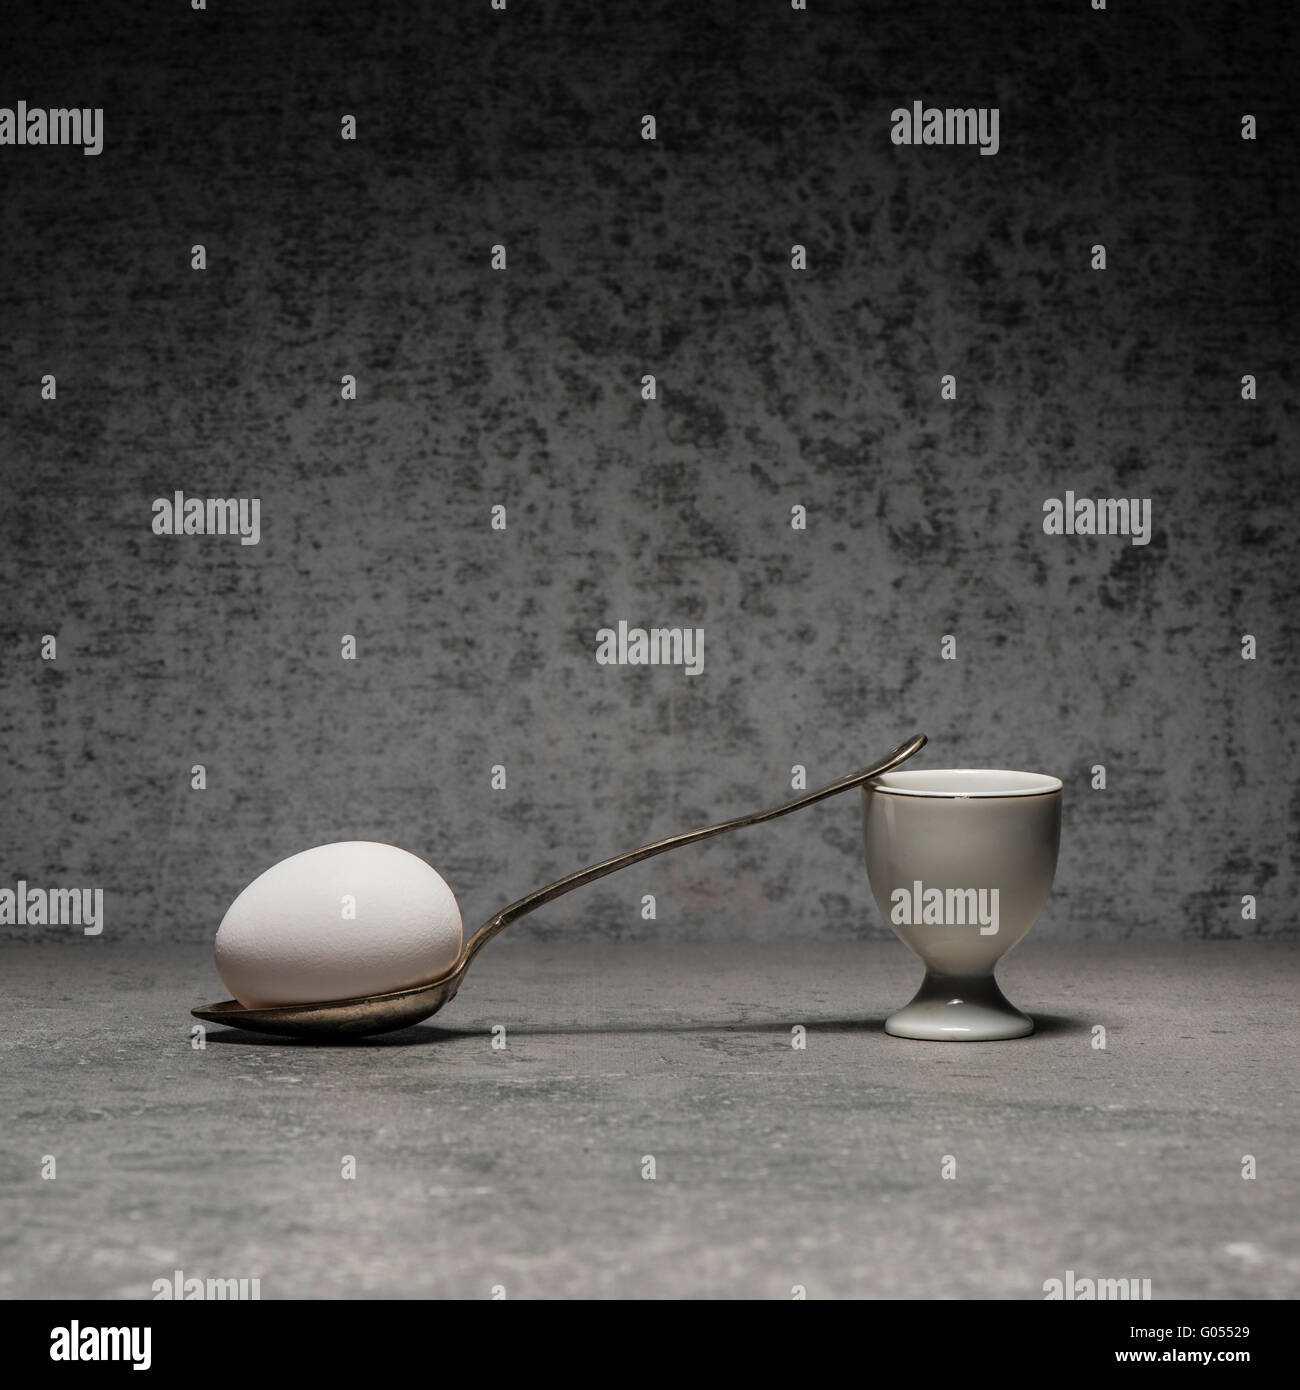 Uovo, eggcup e cucchiaio ancora in vita. Immagine concettuale con la semplicità e la copia dello spazio. La colazione pasto sul tavolo di pietra. Foto Stock